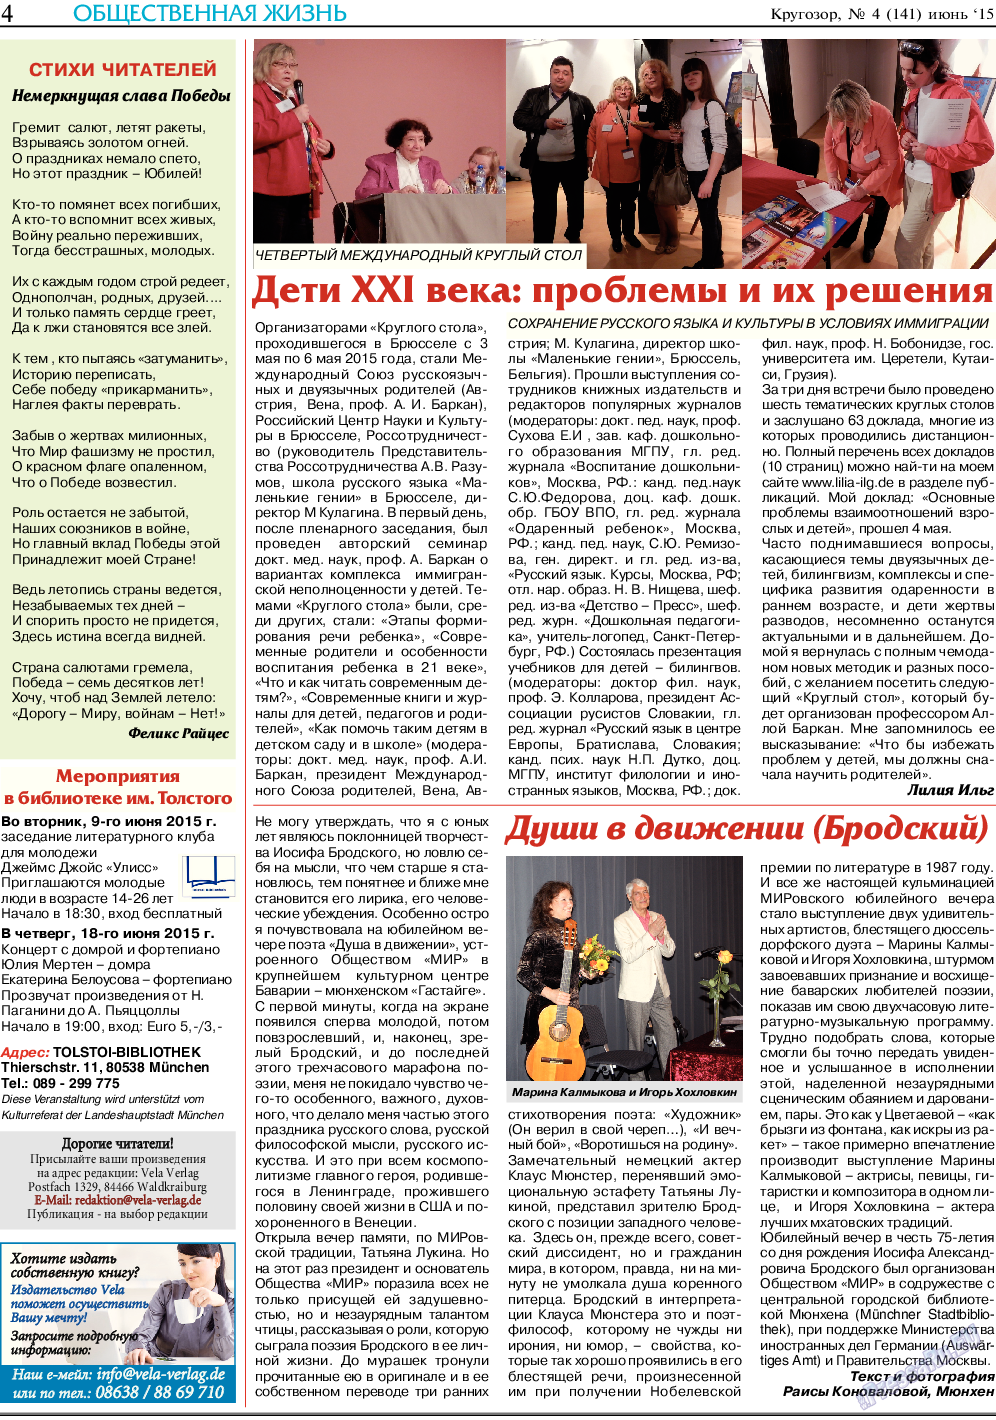 Кругозор (газета). 2015 год, номер 6, стр. 4